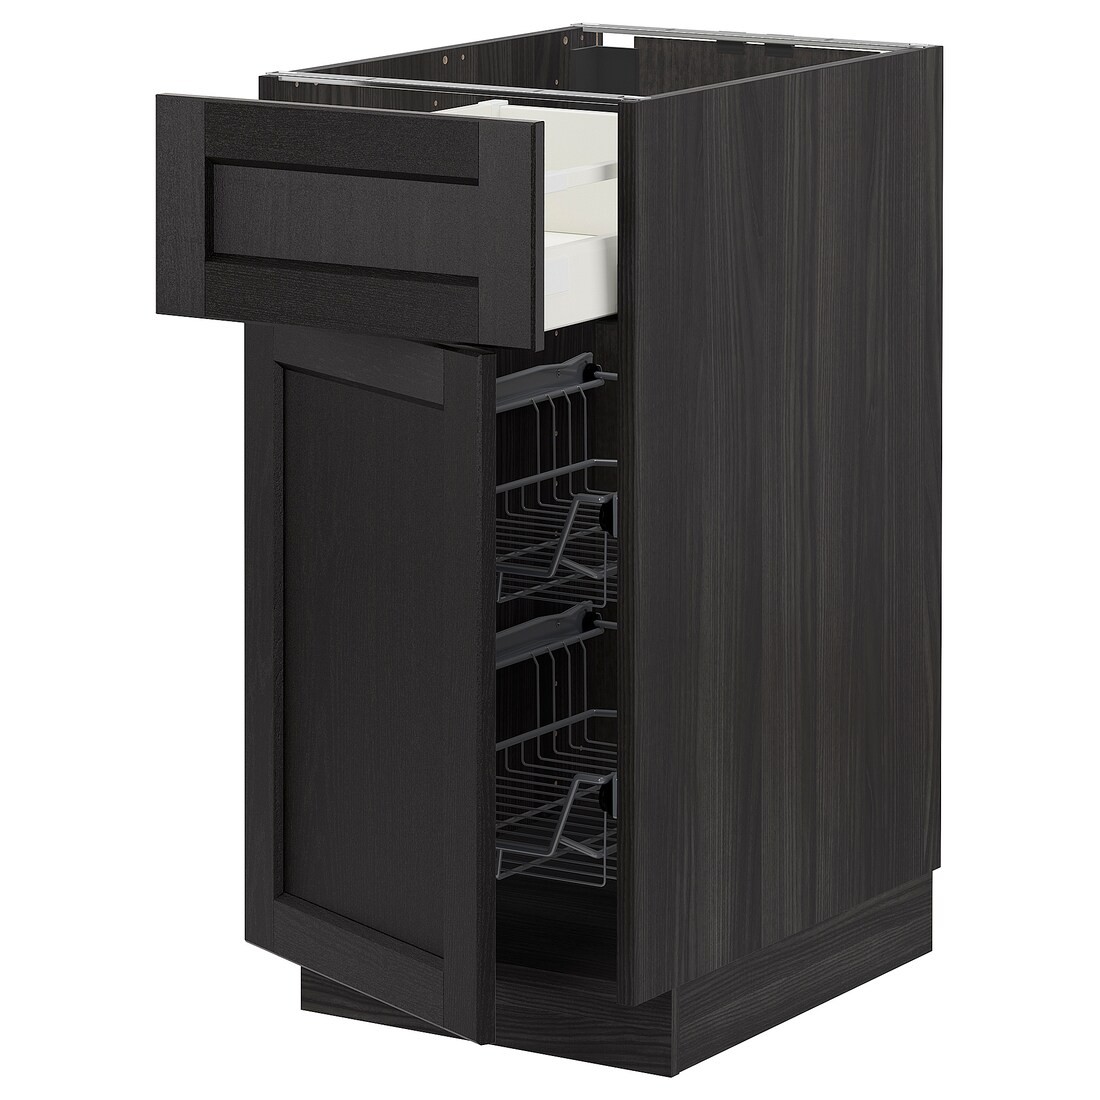 IKEA METOD МЕТОД / MAXIMERA МАКСИМЕРА Наполный шкаф с проволочными корзинами / ящиком / дверью, черный / Lerhyttan черная морилка, 40x60 см 29457659 | 294.576.59